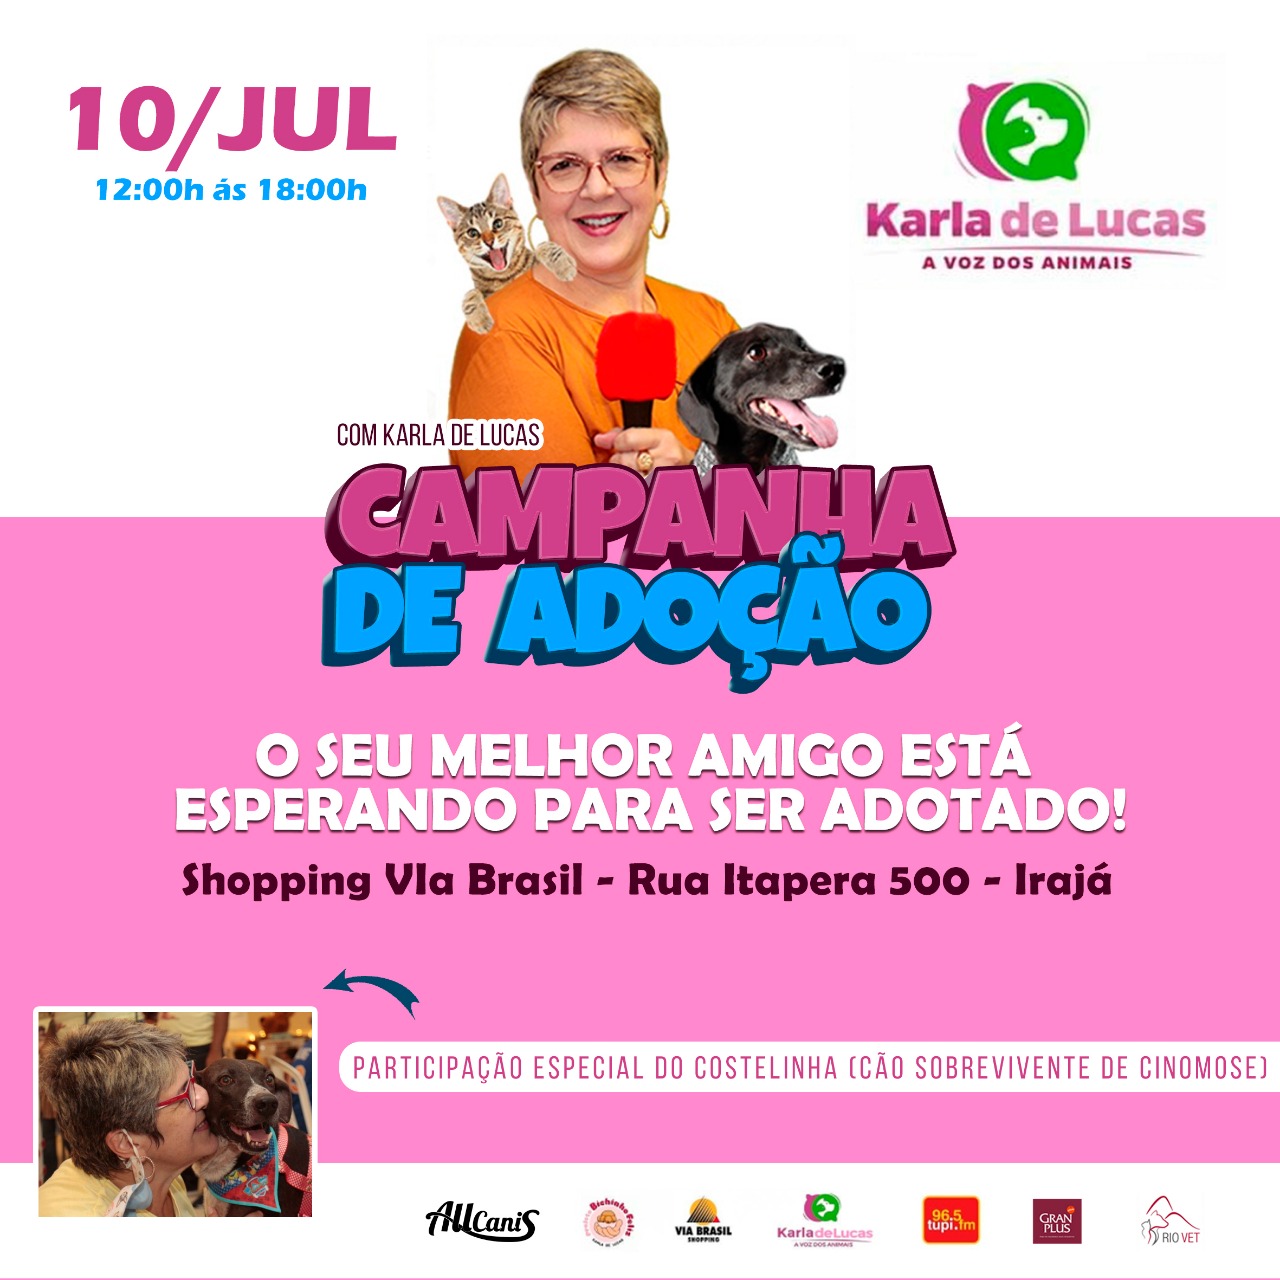 Karla de Lucas promove 'Campanha de adoção' de cães e gatos na Zona Norte do Rio (Divulgação)